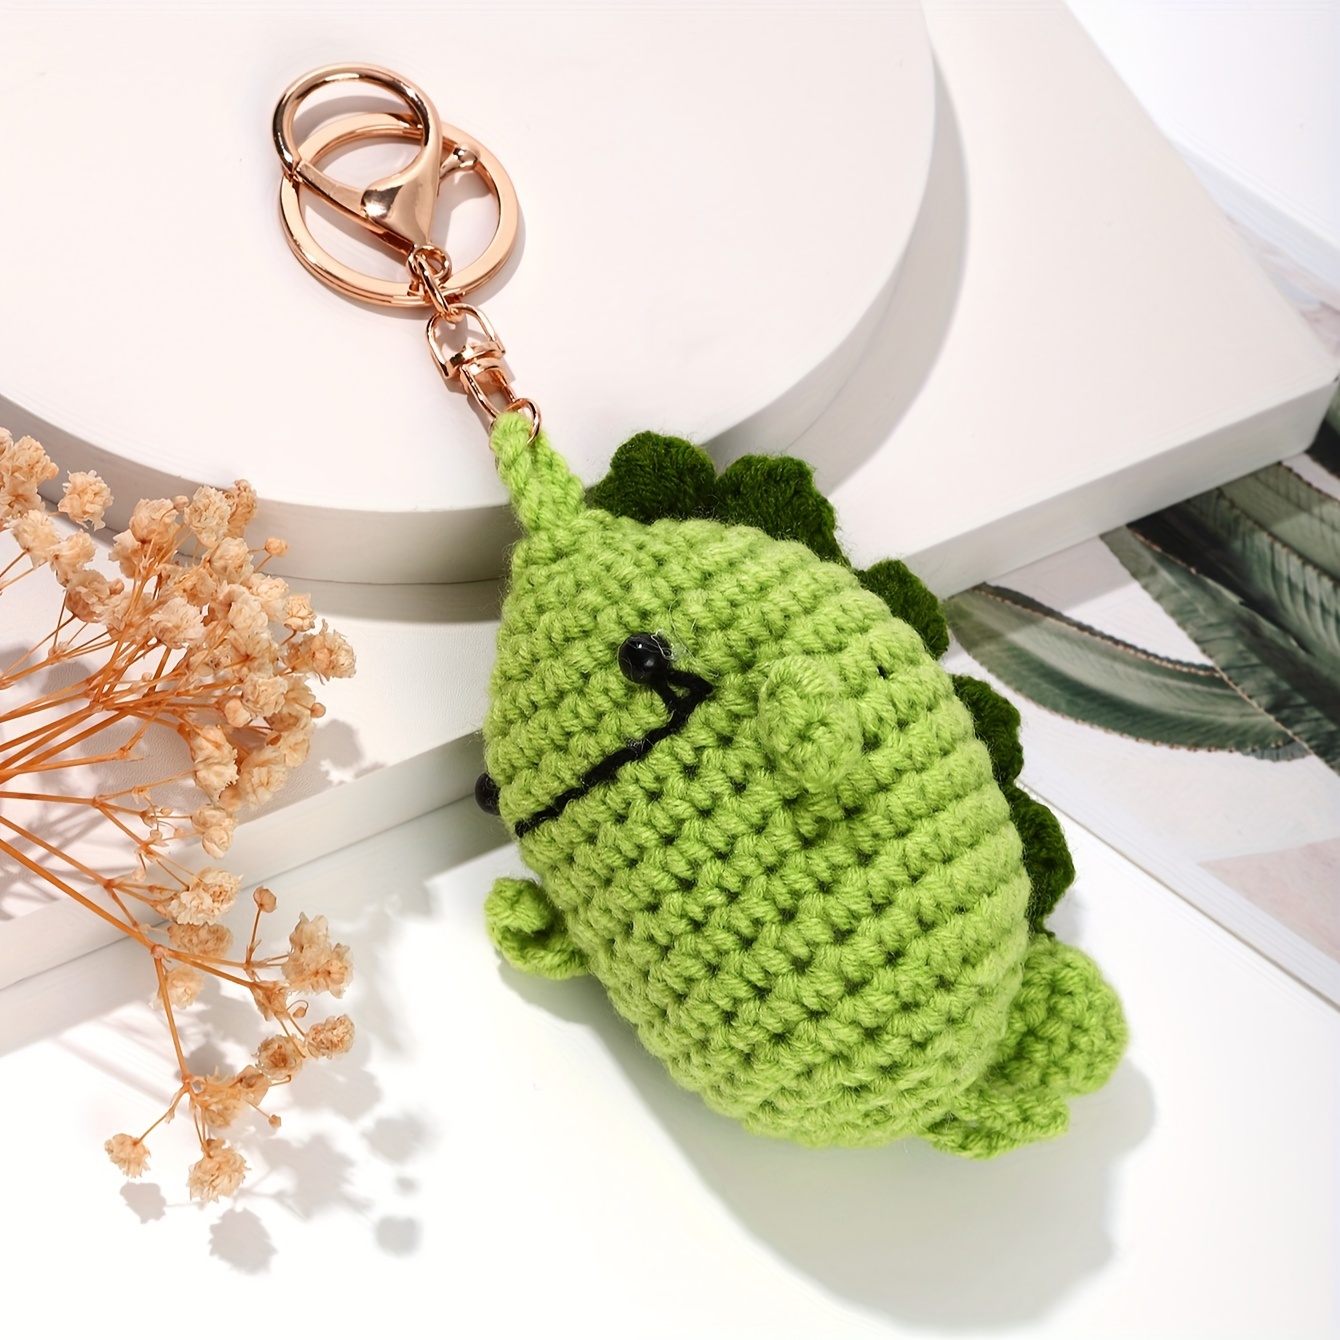 Crochet Dinosaur Backpack, Crochet Backpack Pattern, Crochet Kids